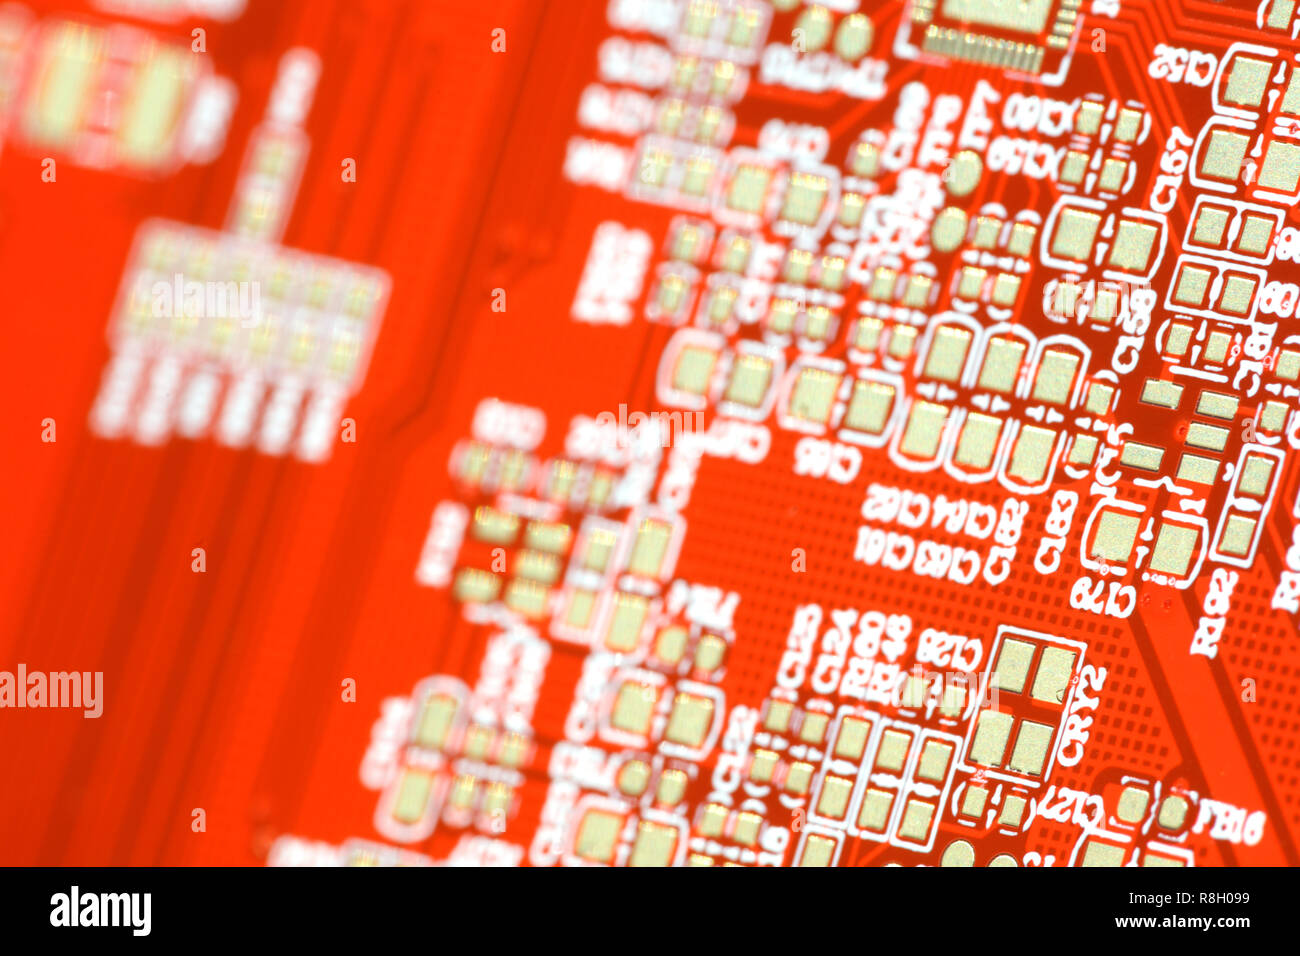 Rote Karte. Electronic computer hardware Technologie. Motherboard digital Chip. Tech Wissenschaft Hintergrund. Integrierte Kommunikation Prozessor. Inf Stockfoto